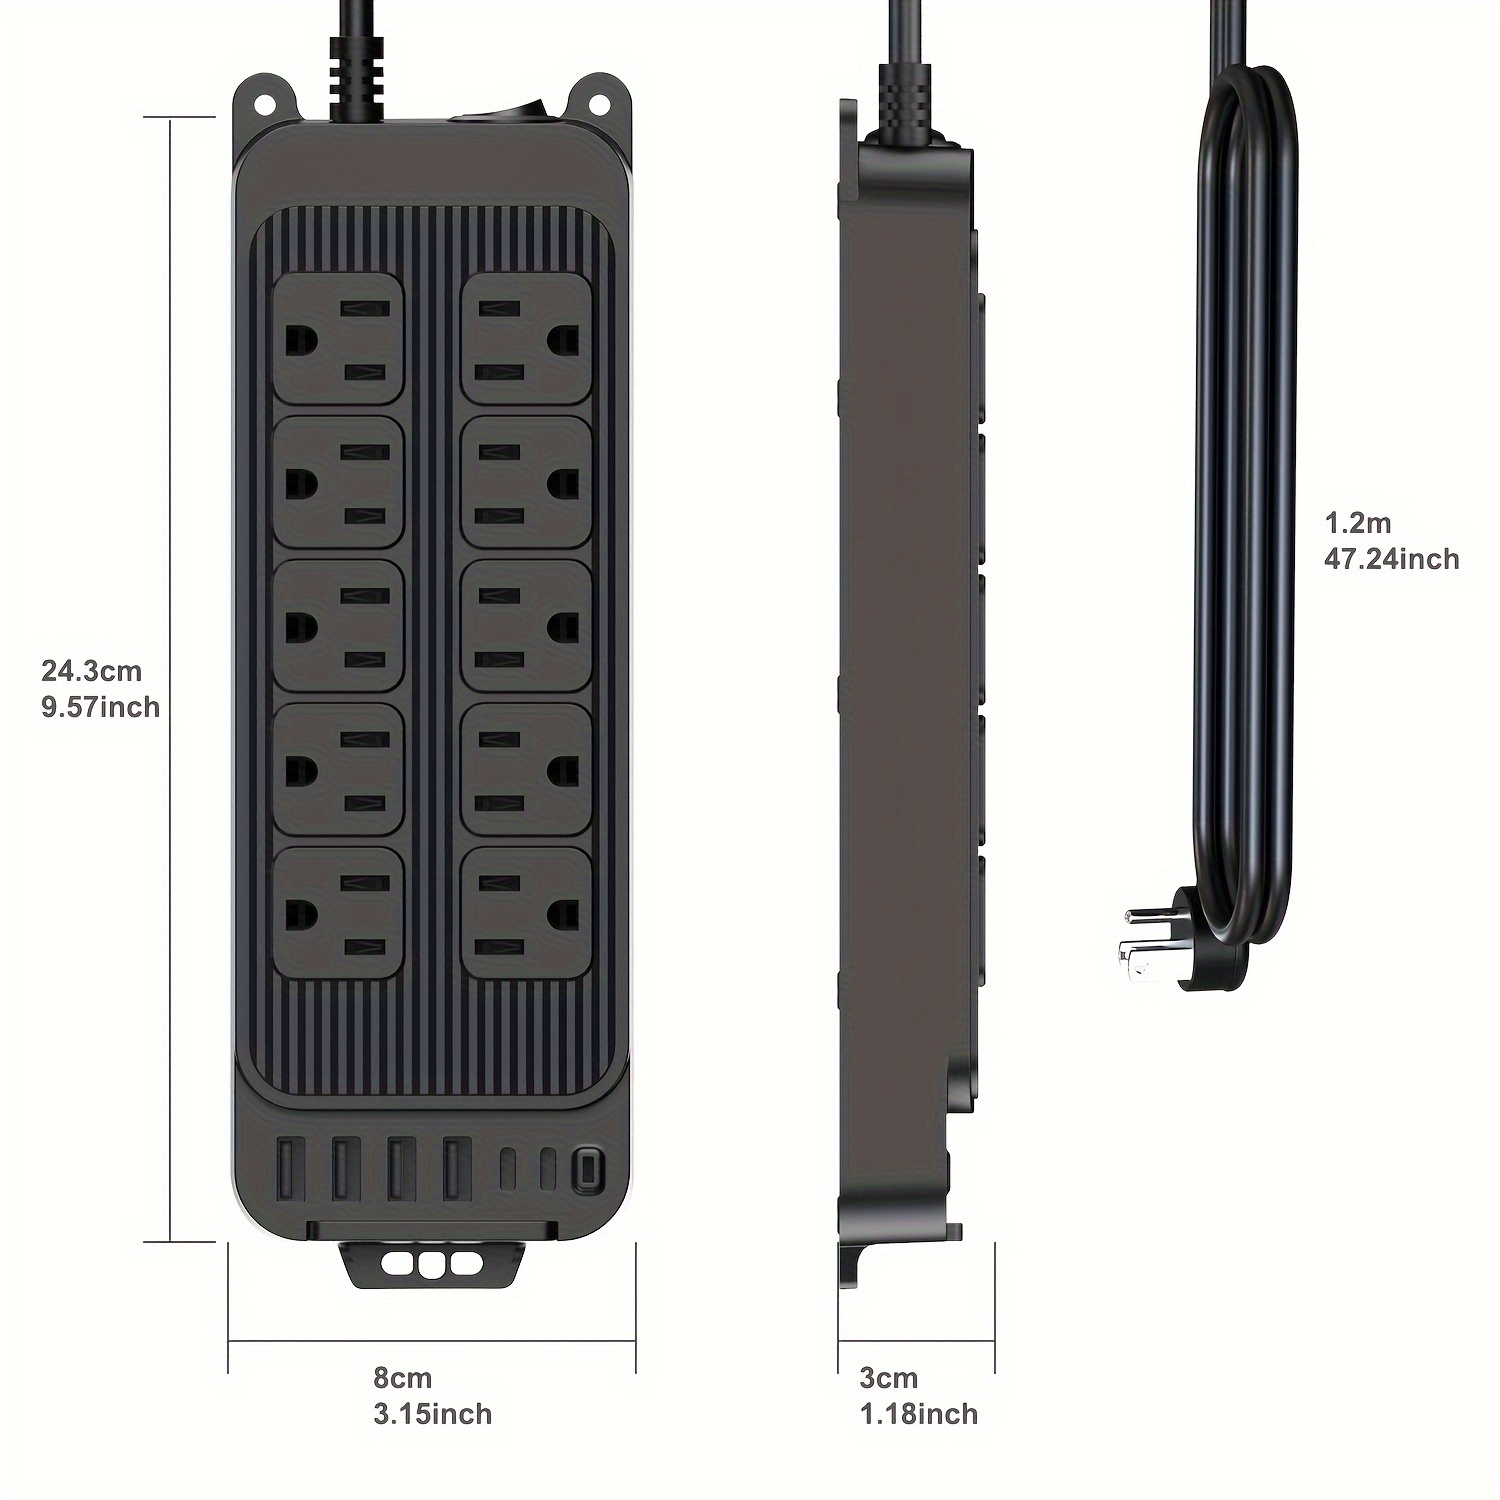 Regleta de alimentación con USB, protector de sobretensiones, enchufe plano  con 8 tomas ampliamente espaciadas y 6 puertos USB (1 USB C), cable de